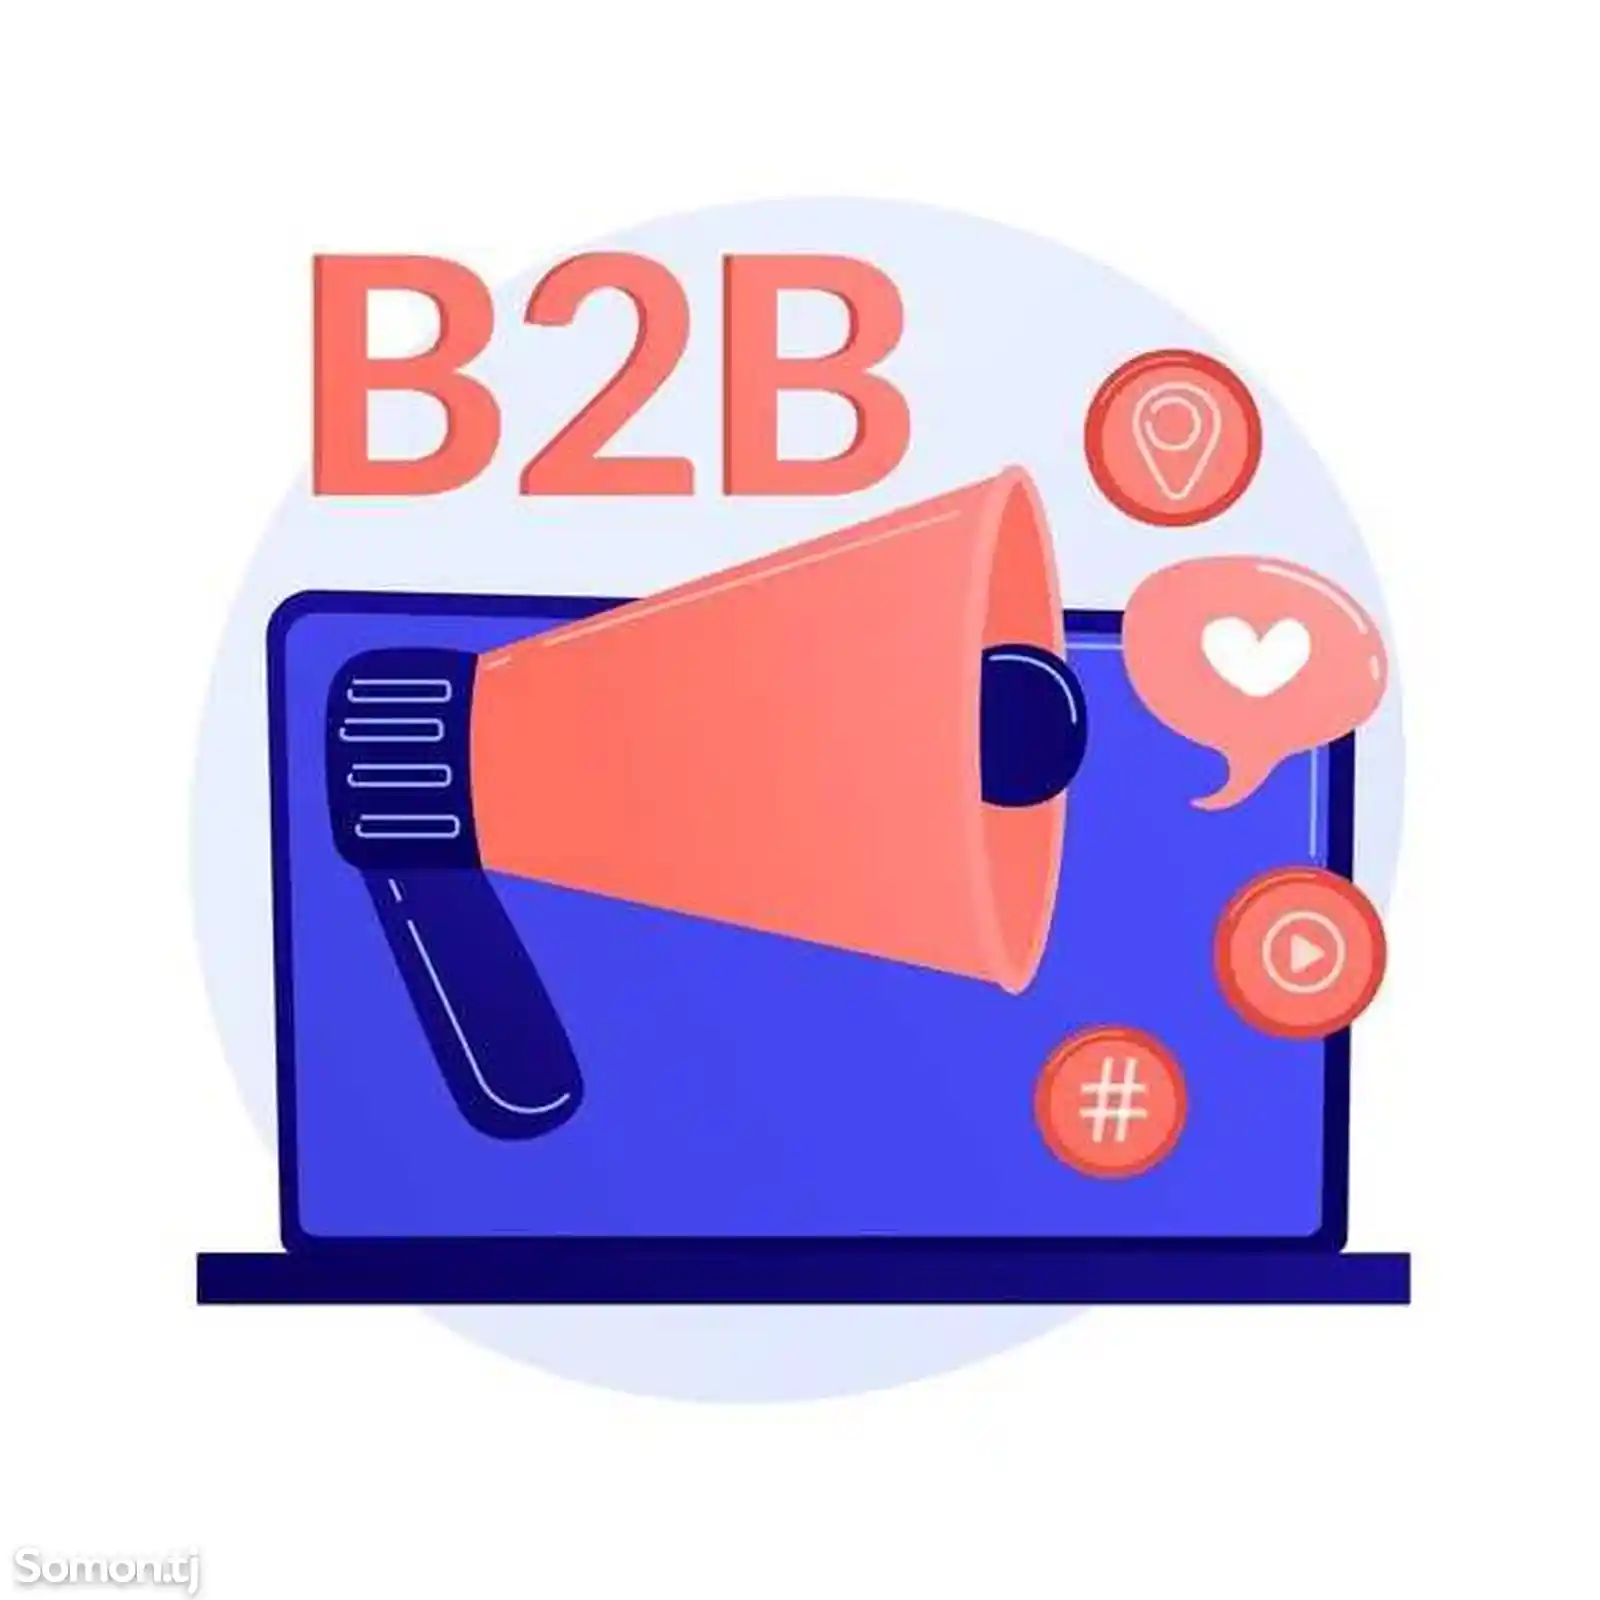 Стратегии социальных сетей для B2B-2